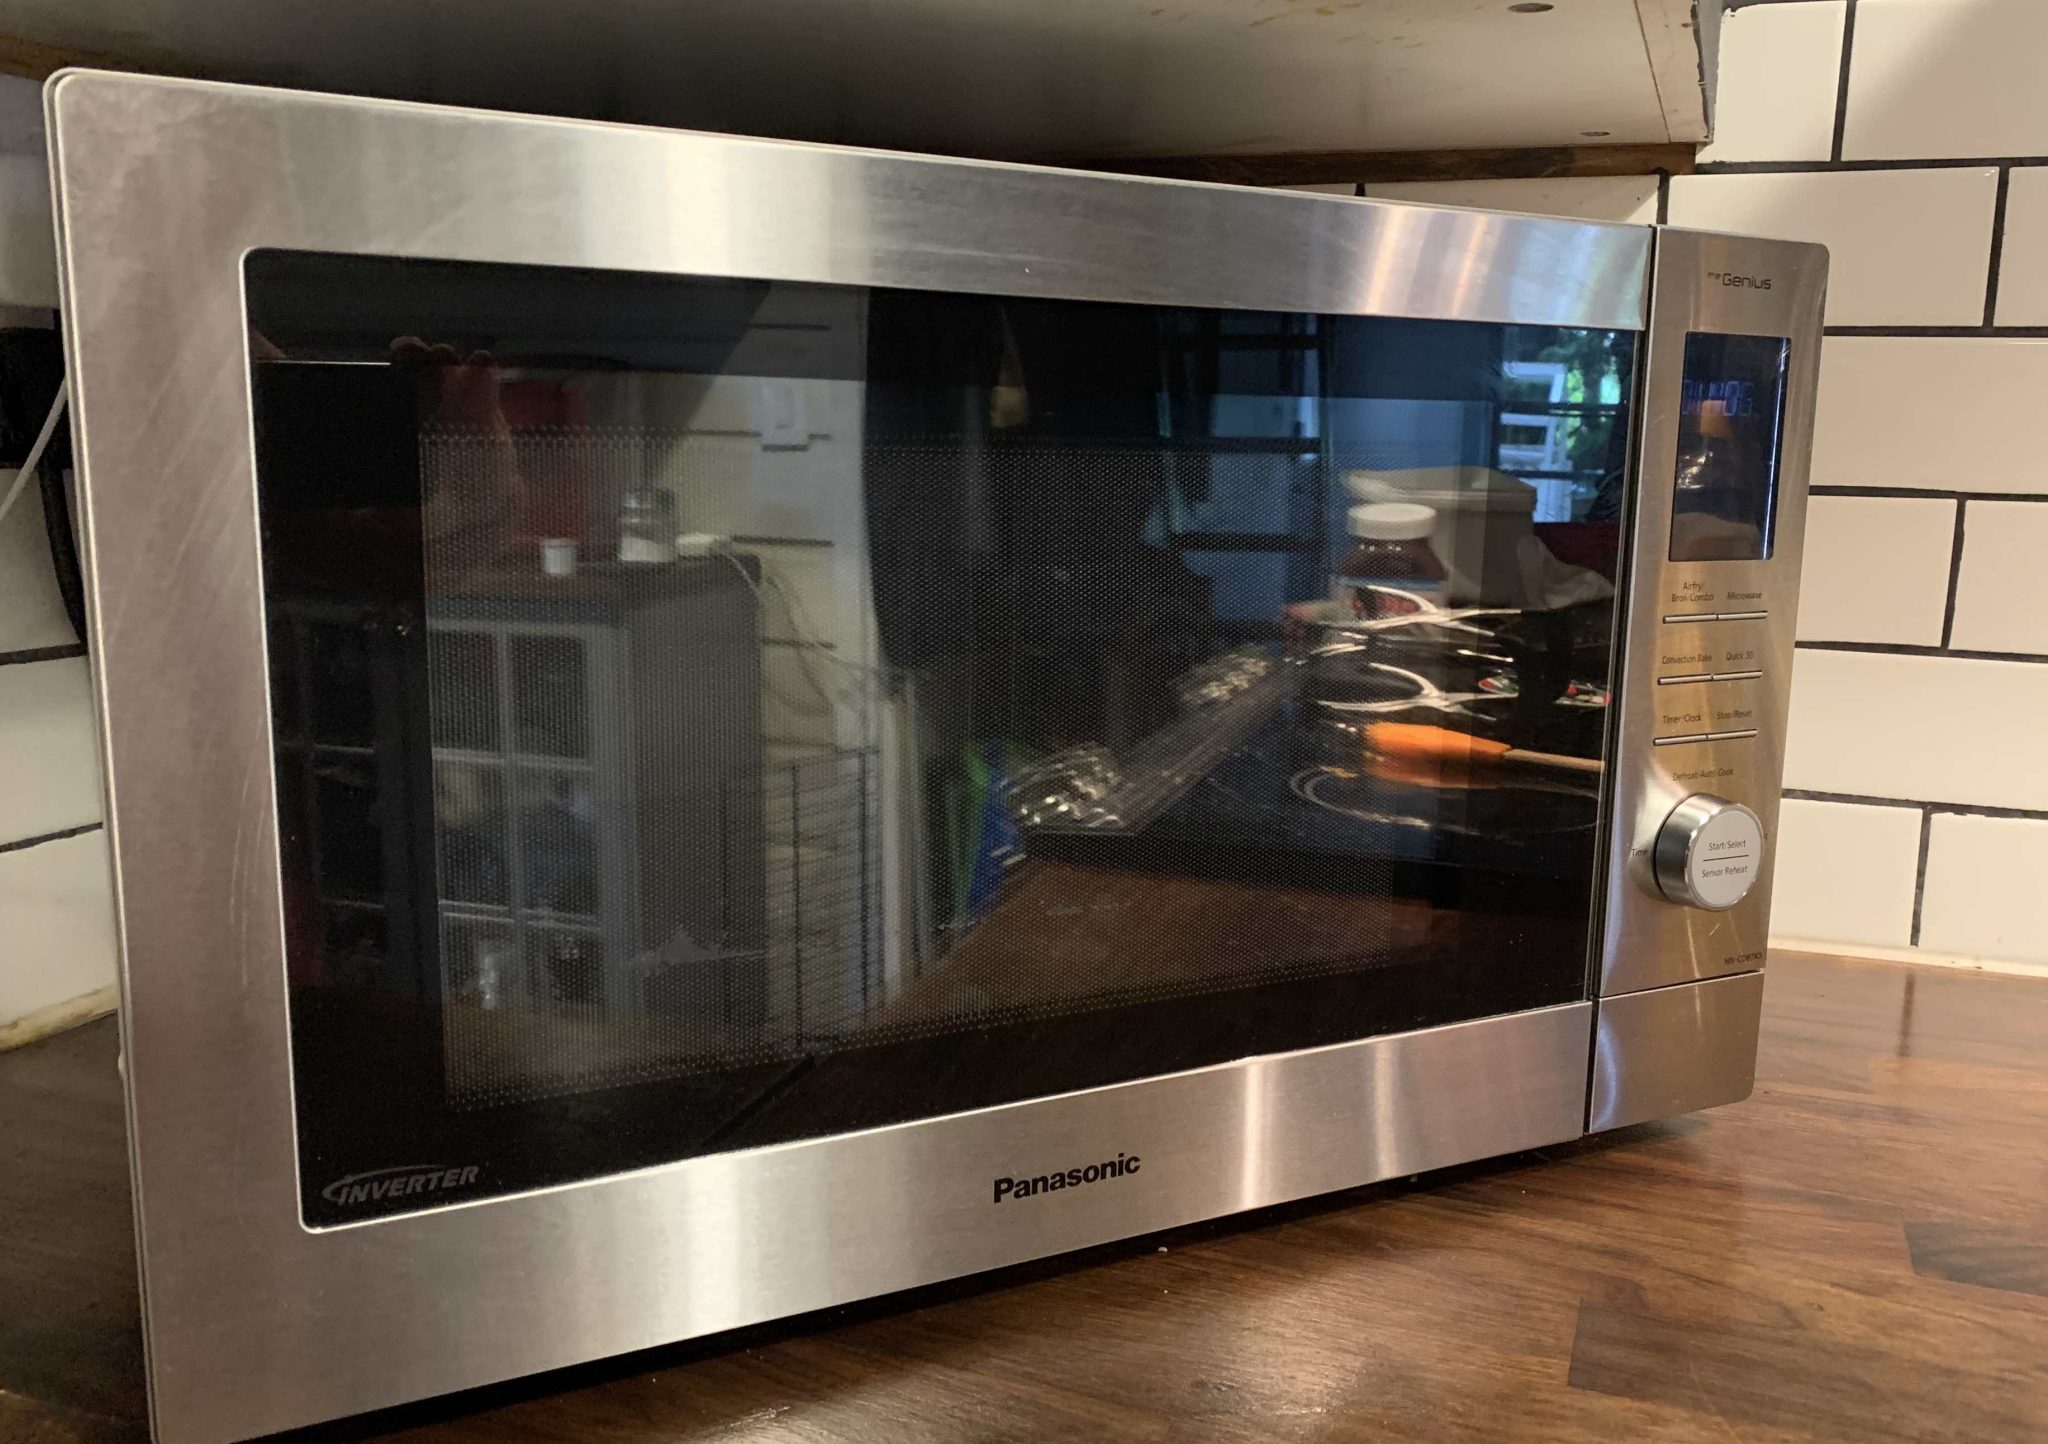 Panasonic Genius 4-in-1 Microwave with Air Fryer Review | Best Buy Blog